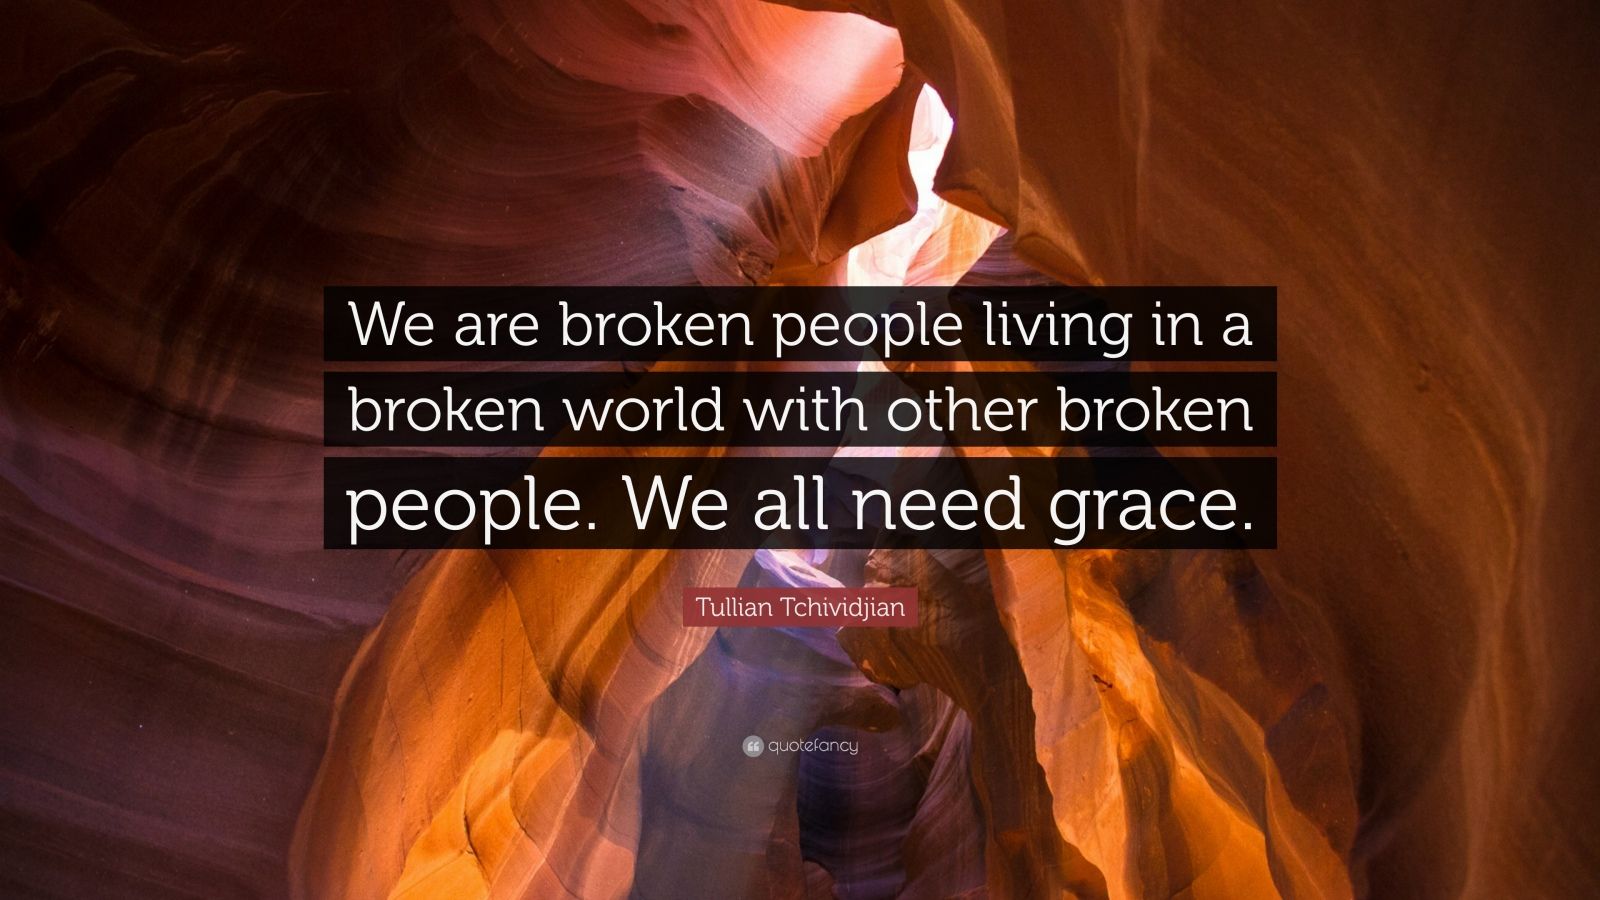 Tullian Tchividjian Quote “We are broken people living in a broken